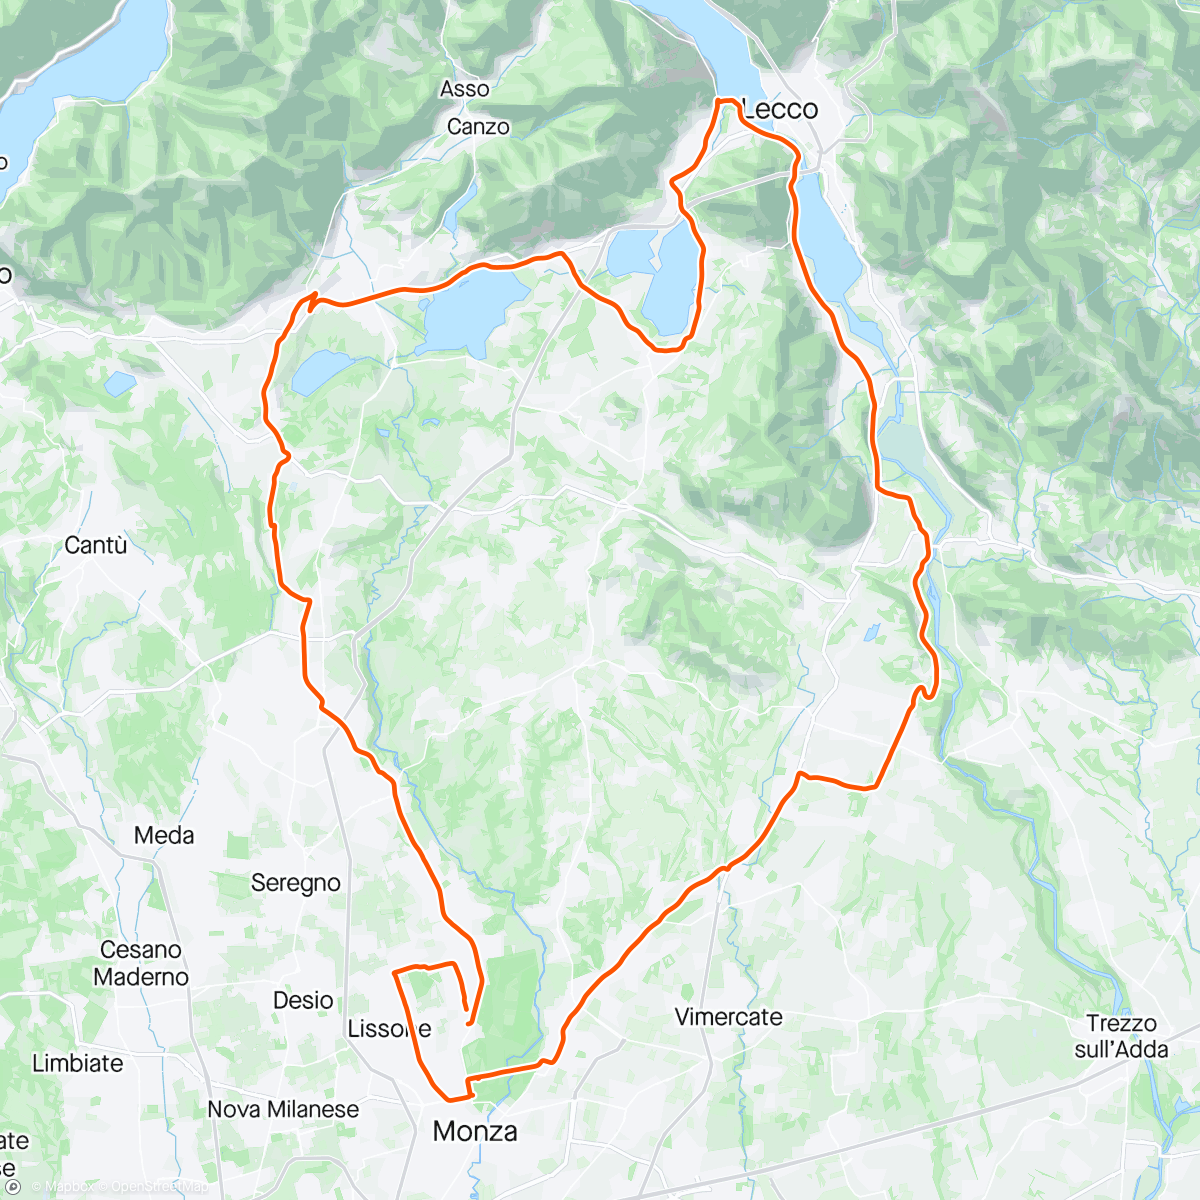 Mapa da atividade, Vedano - Ronco Briantino - Brivio - Valmadrera - Oggiono- Lago di Pusiano- Anzano - Giussano  - Carate - 🏡